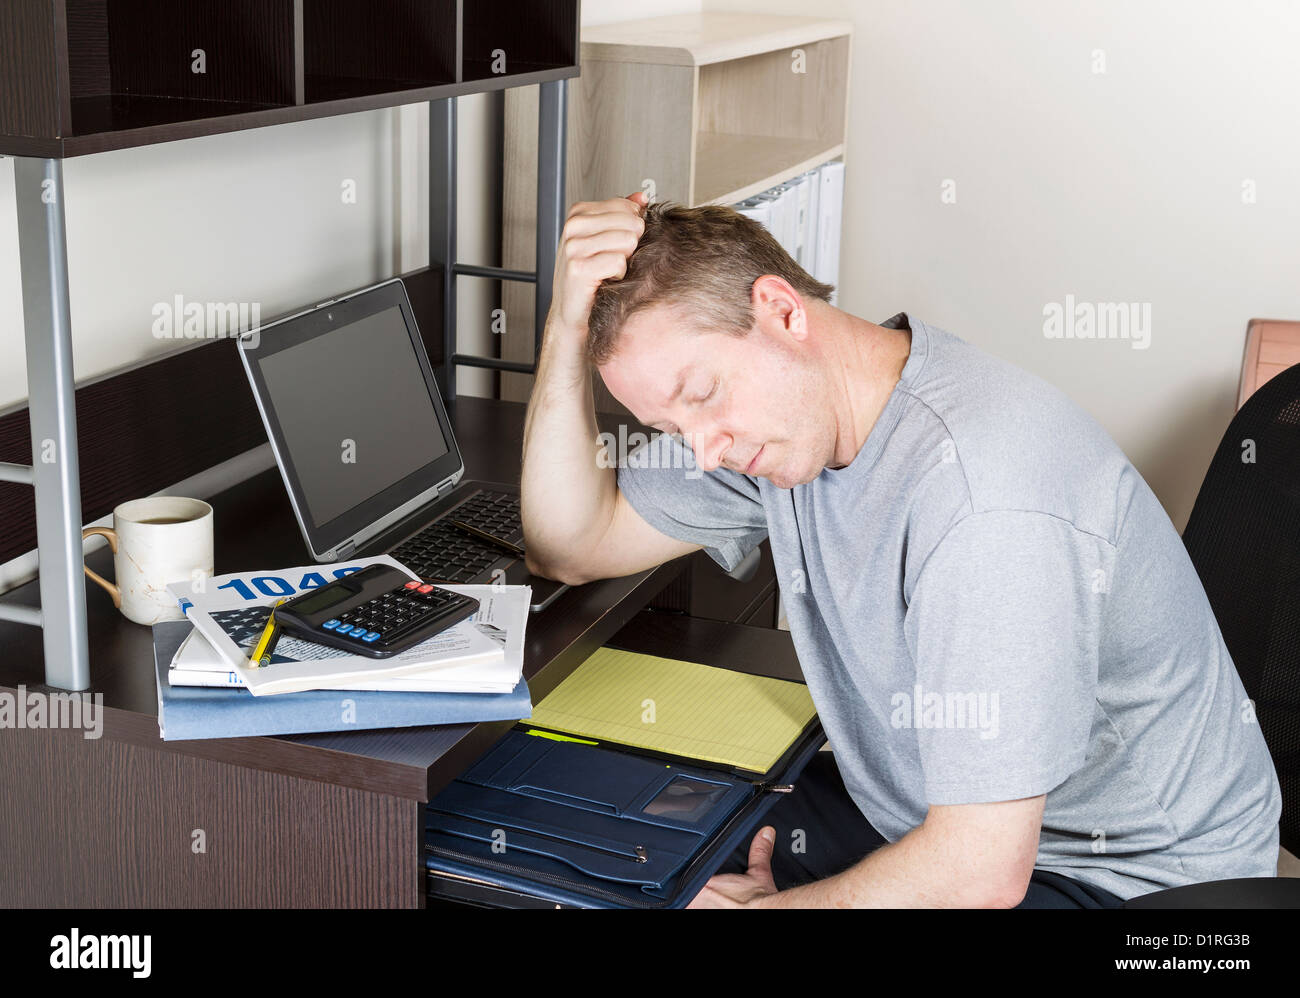 Reifen Mann Kopf in der hand haltend, mit Computer, steuerliche Einkommen Booklet und Kaffee Tasse auf Schreibtisch Stockfoto